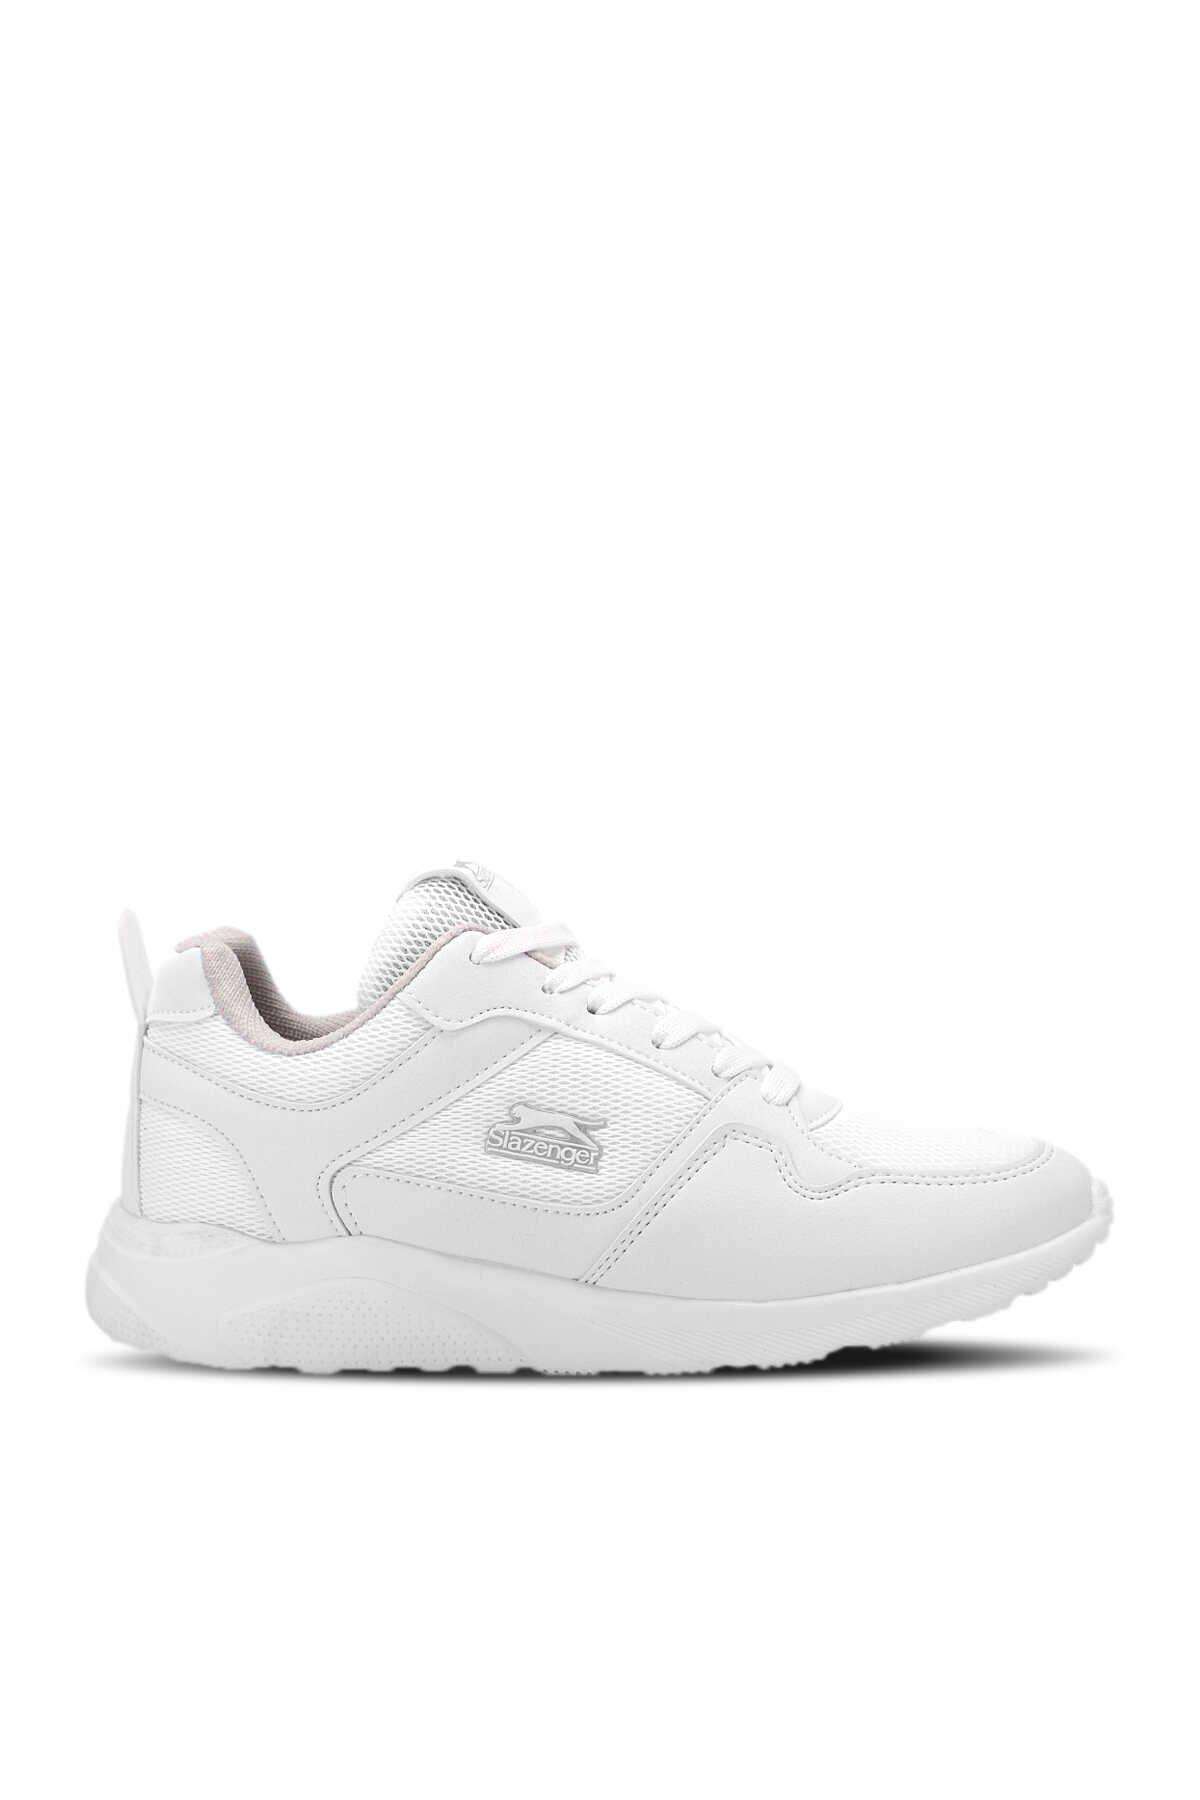 Slazenger - Slazenger EAGLE I Sneaker Kadın Ayakkabı Beyaz